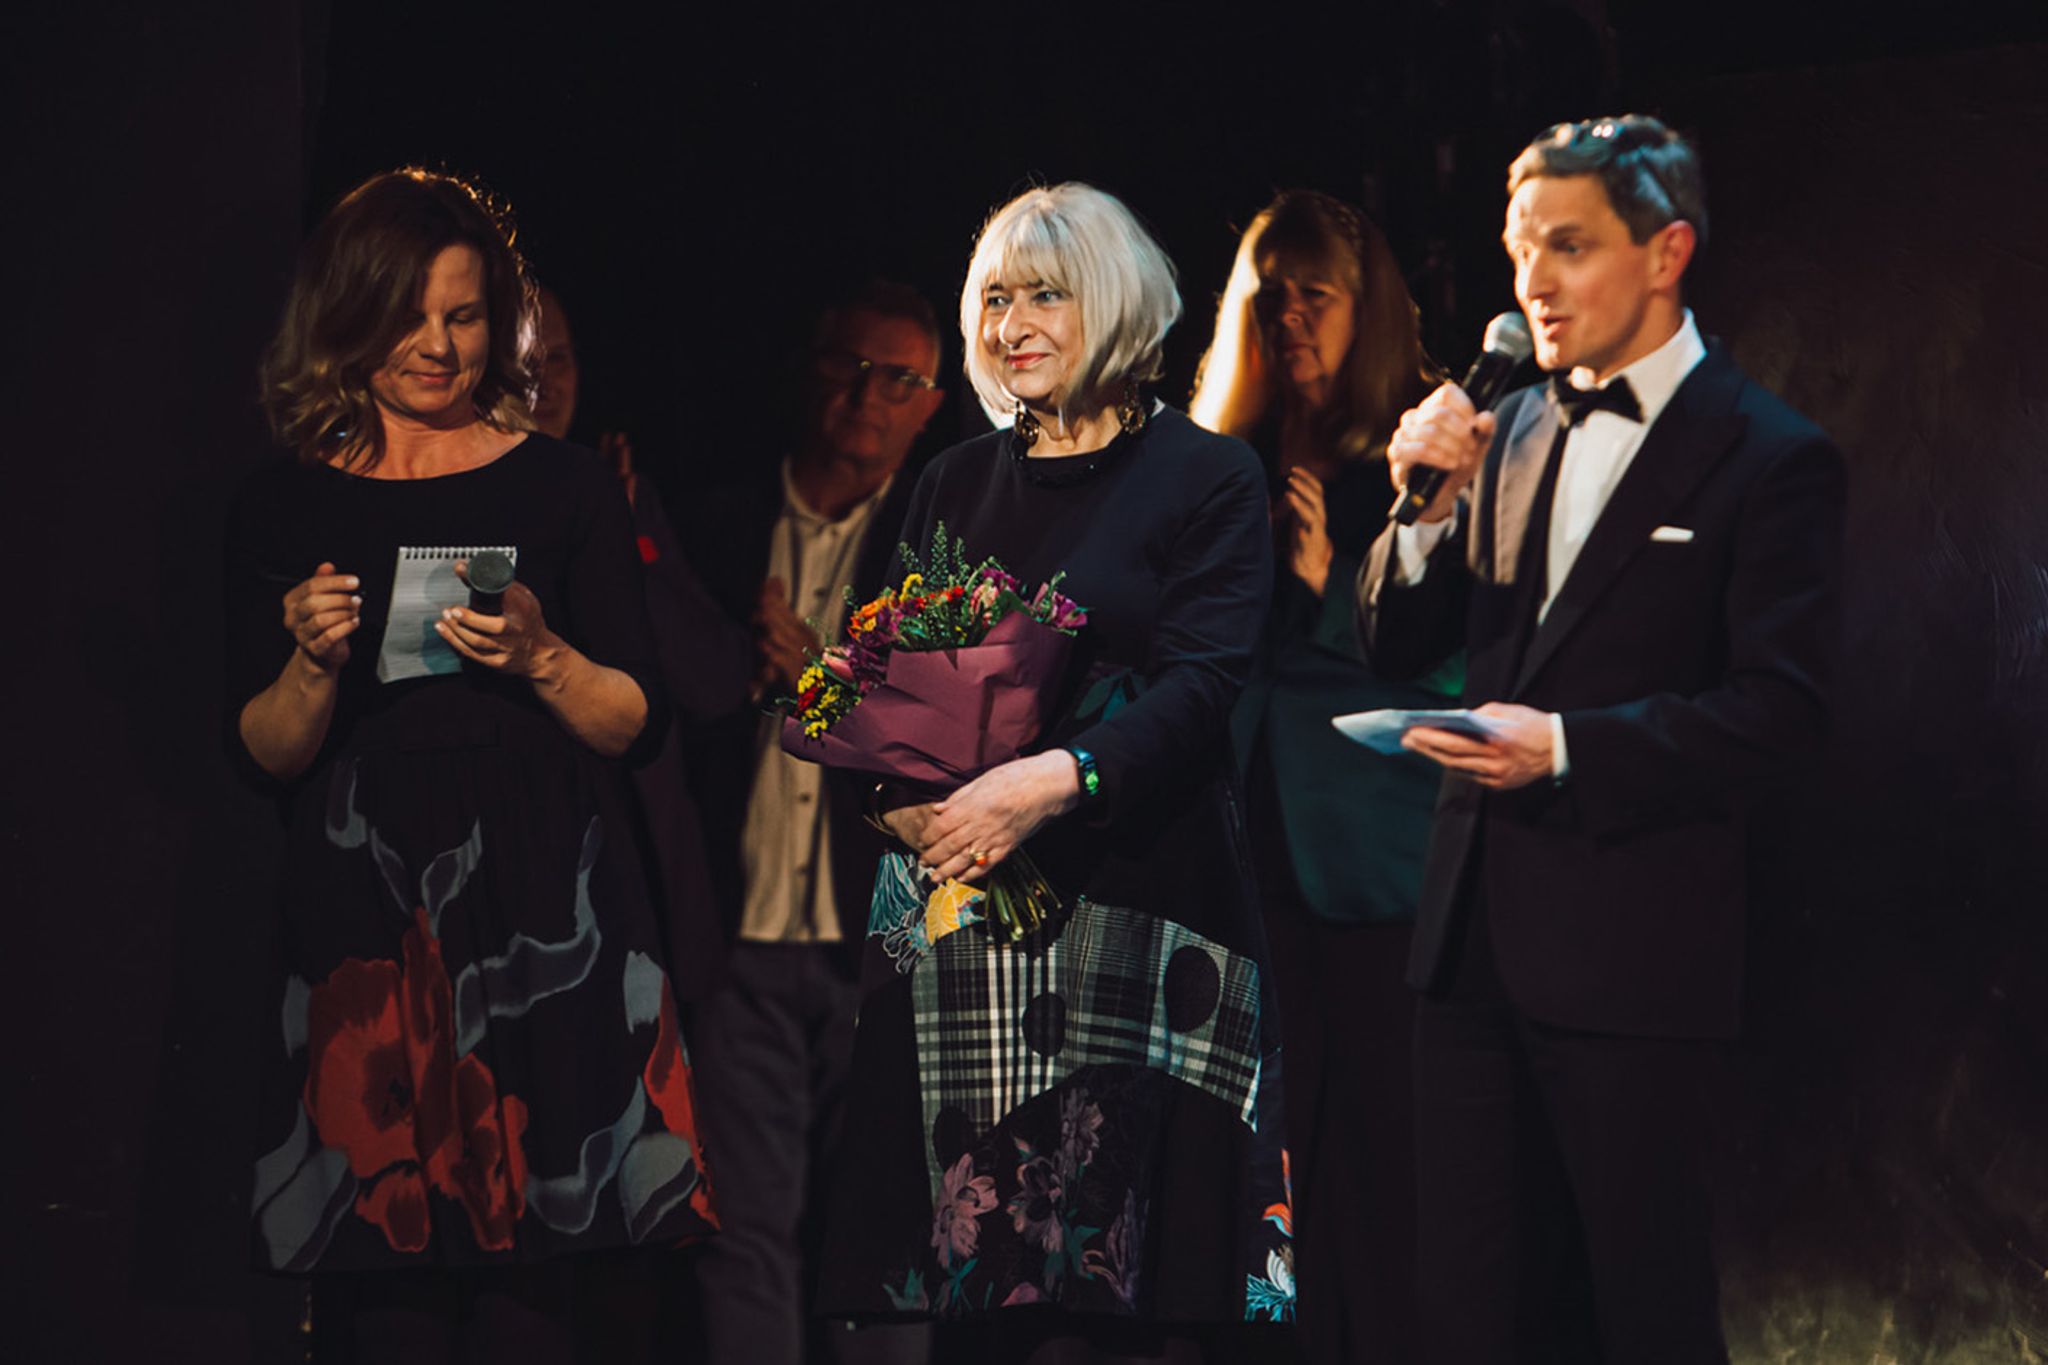 Die Holocaust-Überlebende Elzbieta Ficowska (Mitte) hält Blumen nach einer Vorstellung des Musicals «Irena».